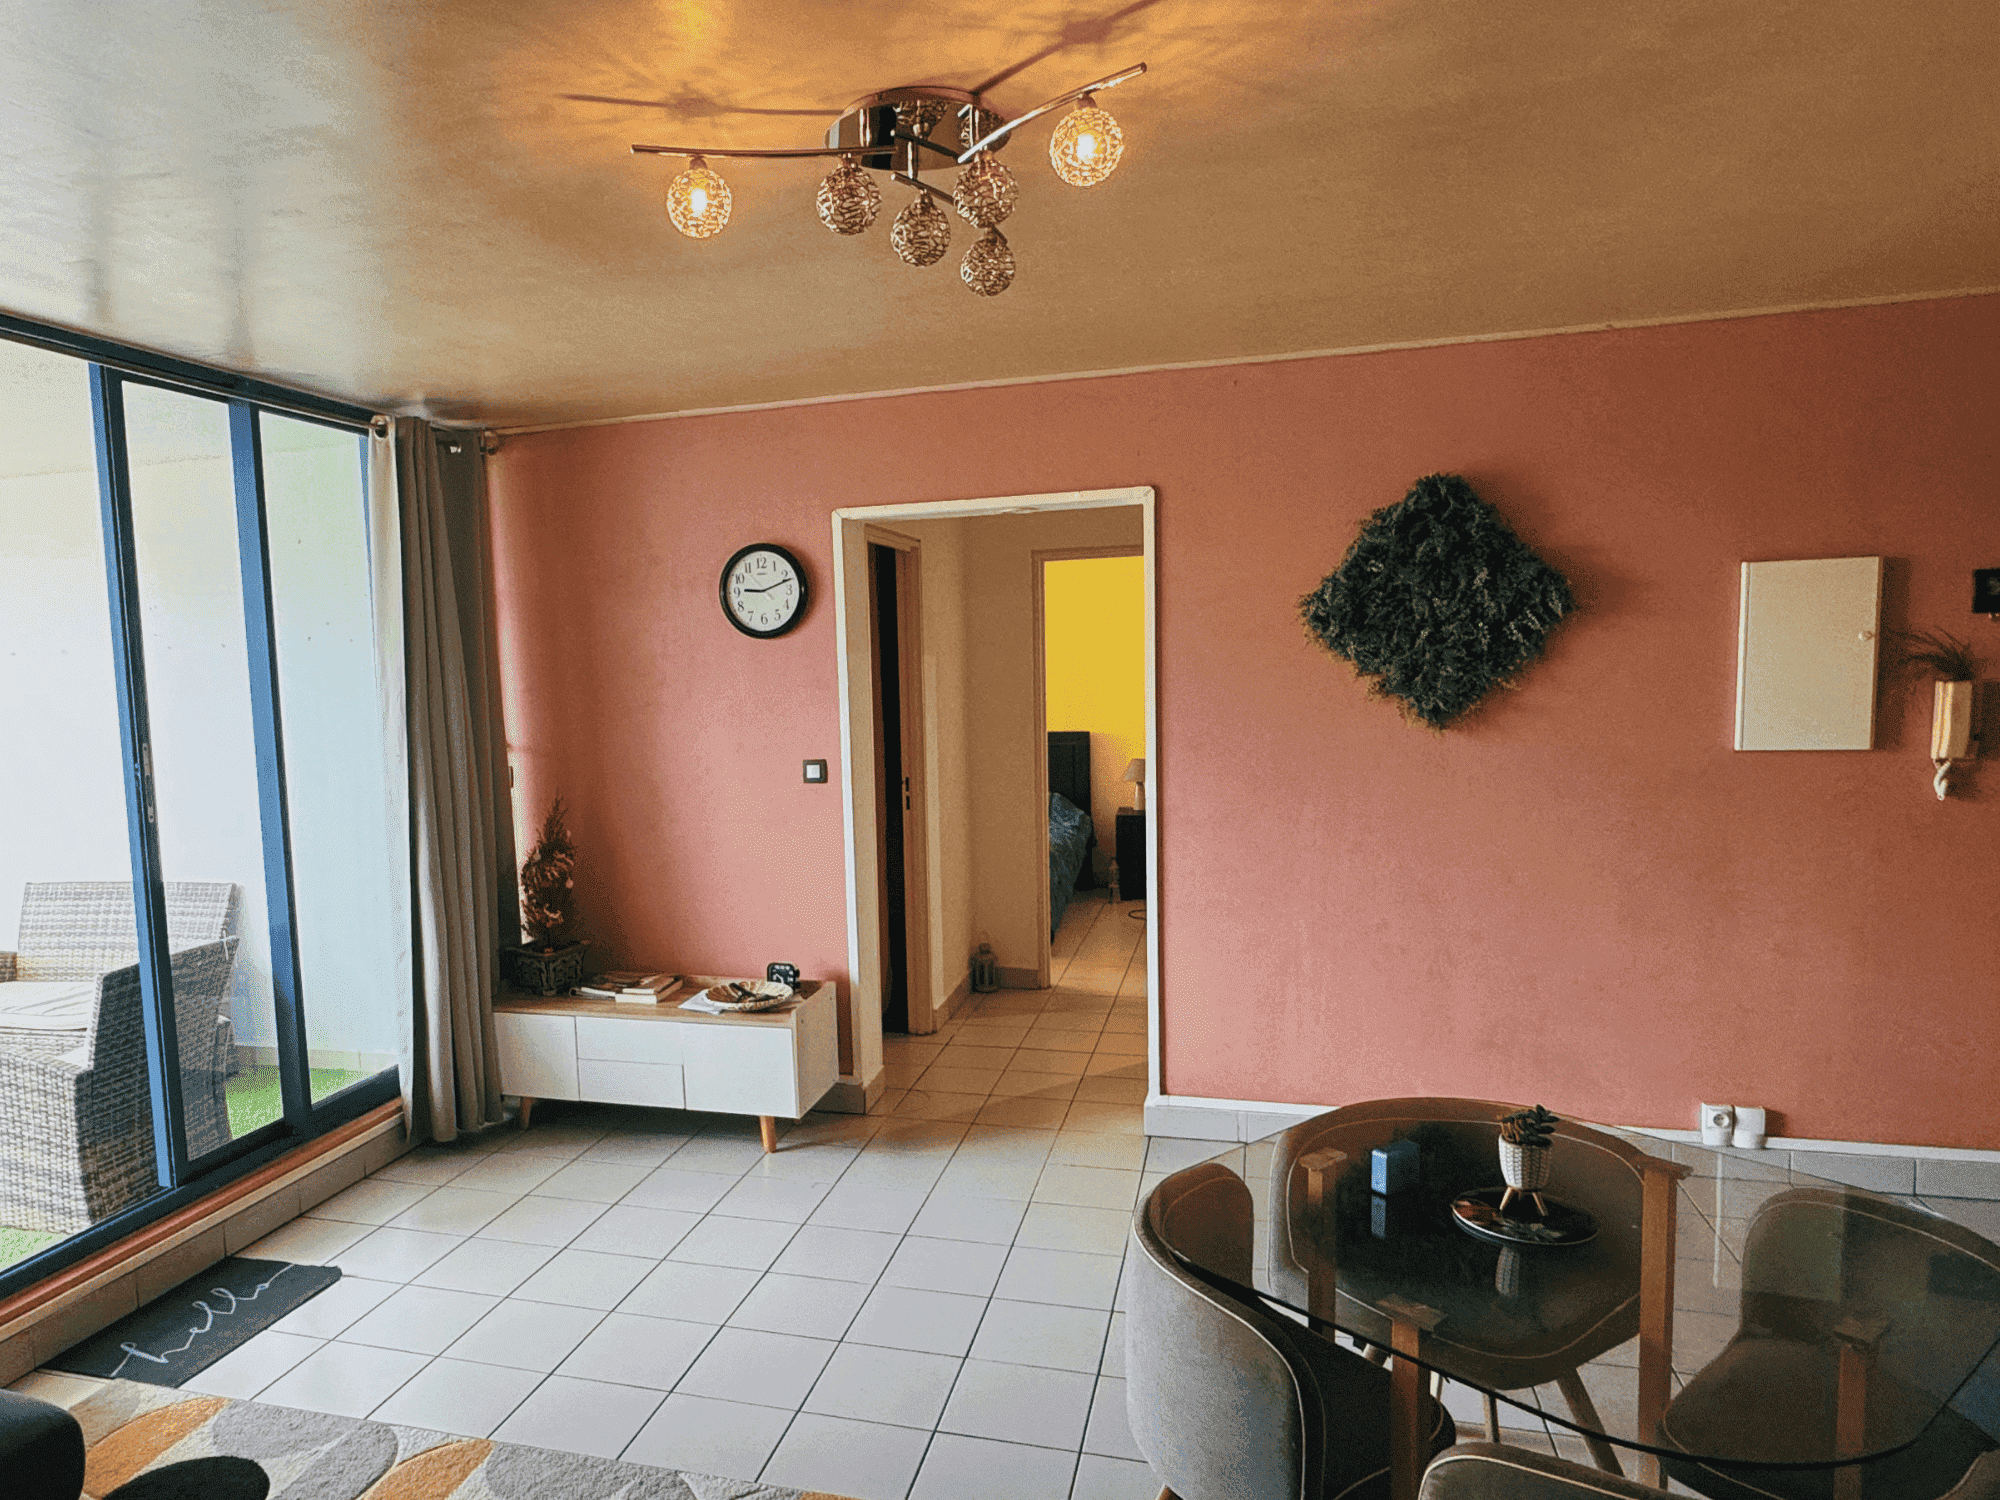 Lakaz-societe-immobilier-localisation-bien-appartement-reunion-saint-denis-chambre